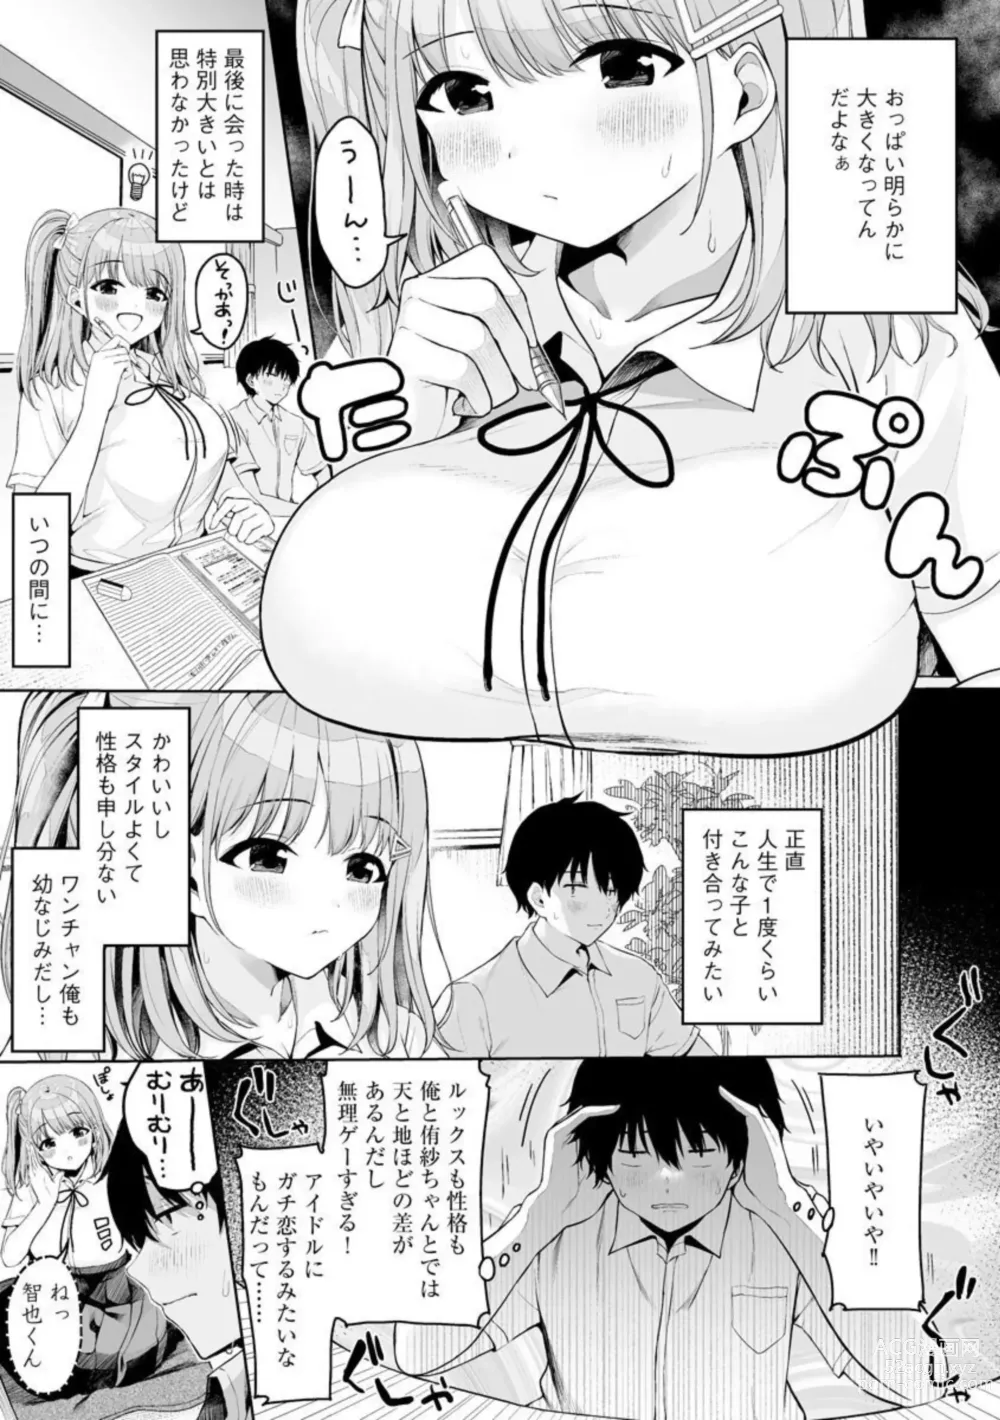 Page 5 of manga Naisho Goto 1